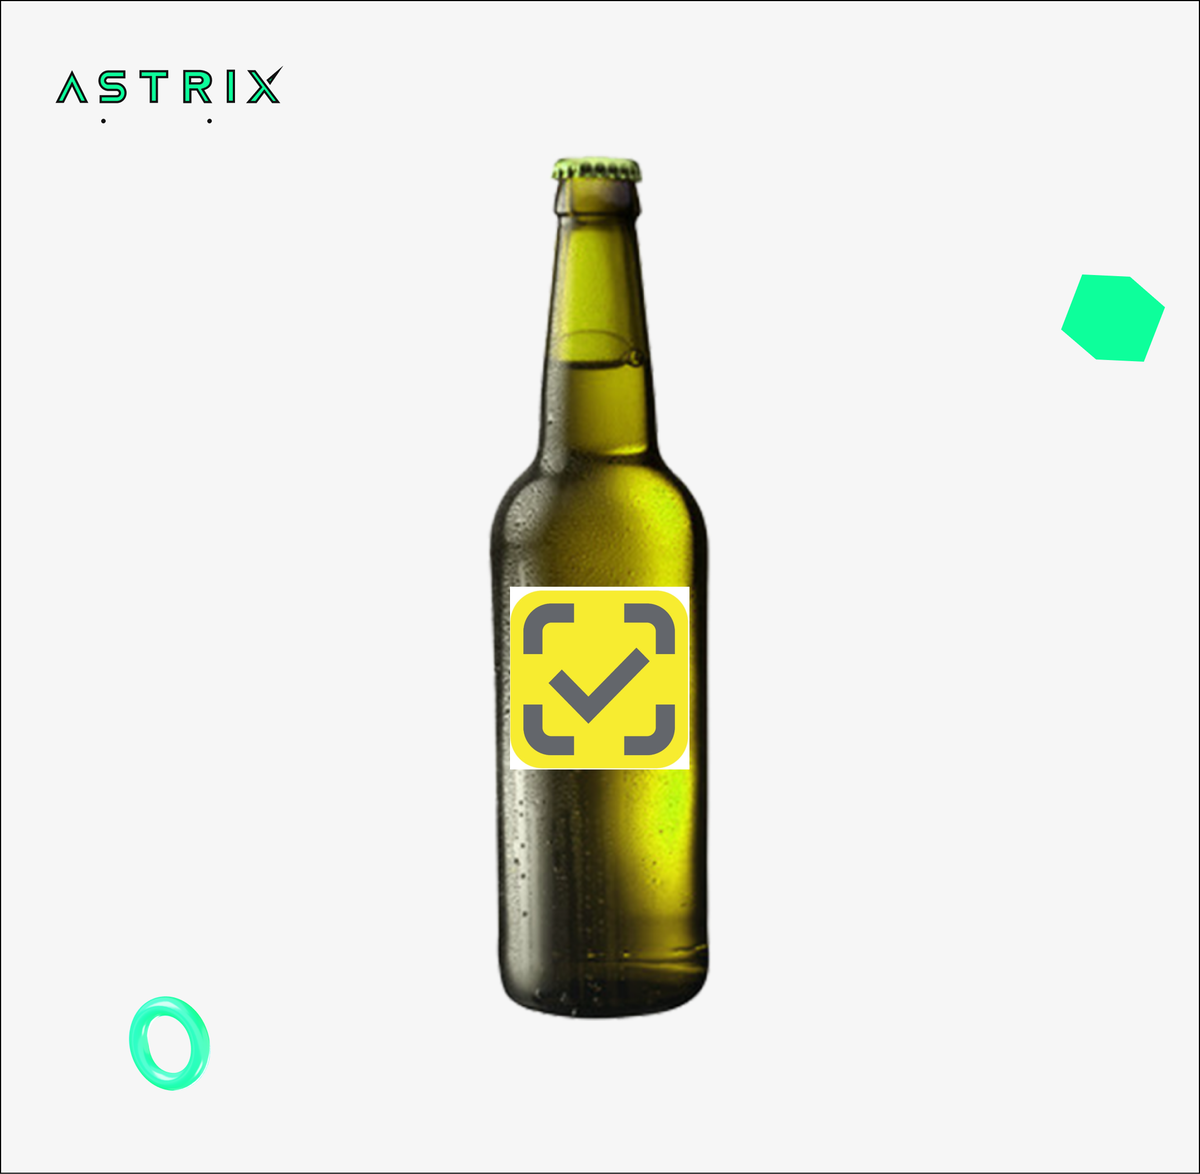 www.astrix.dev